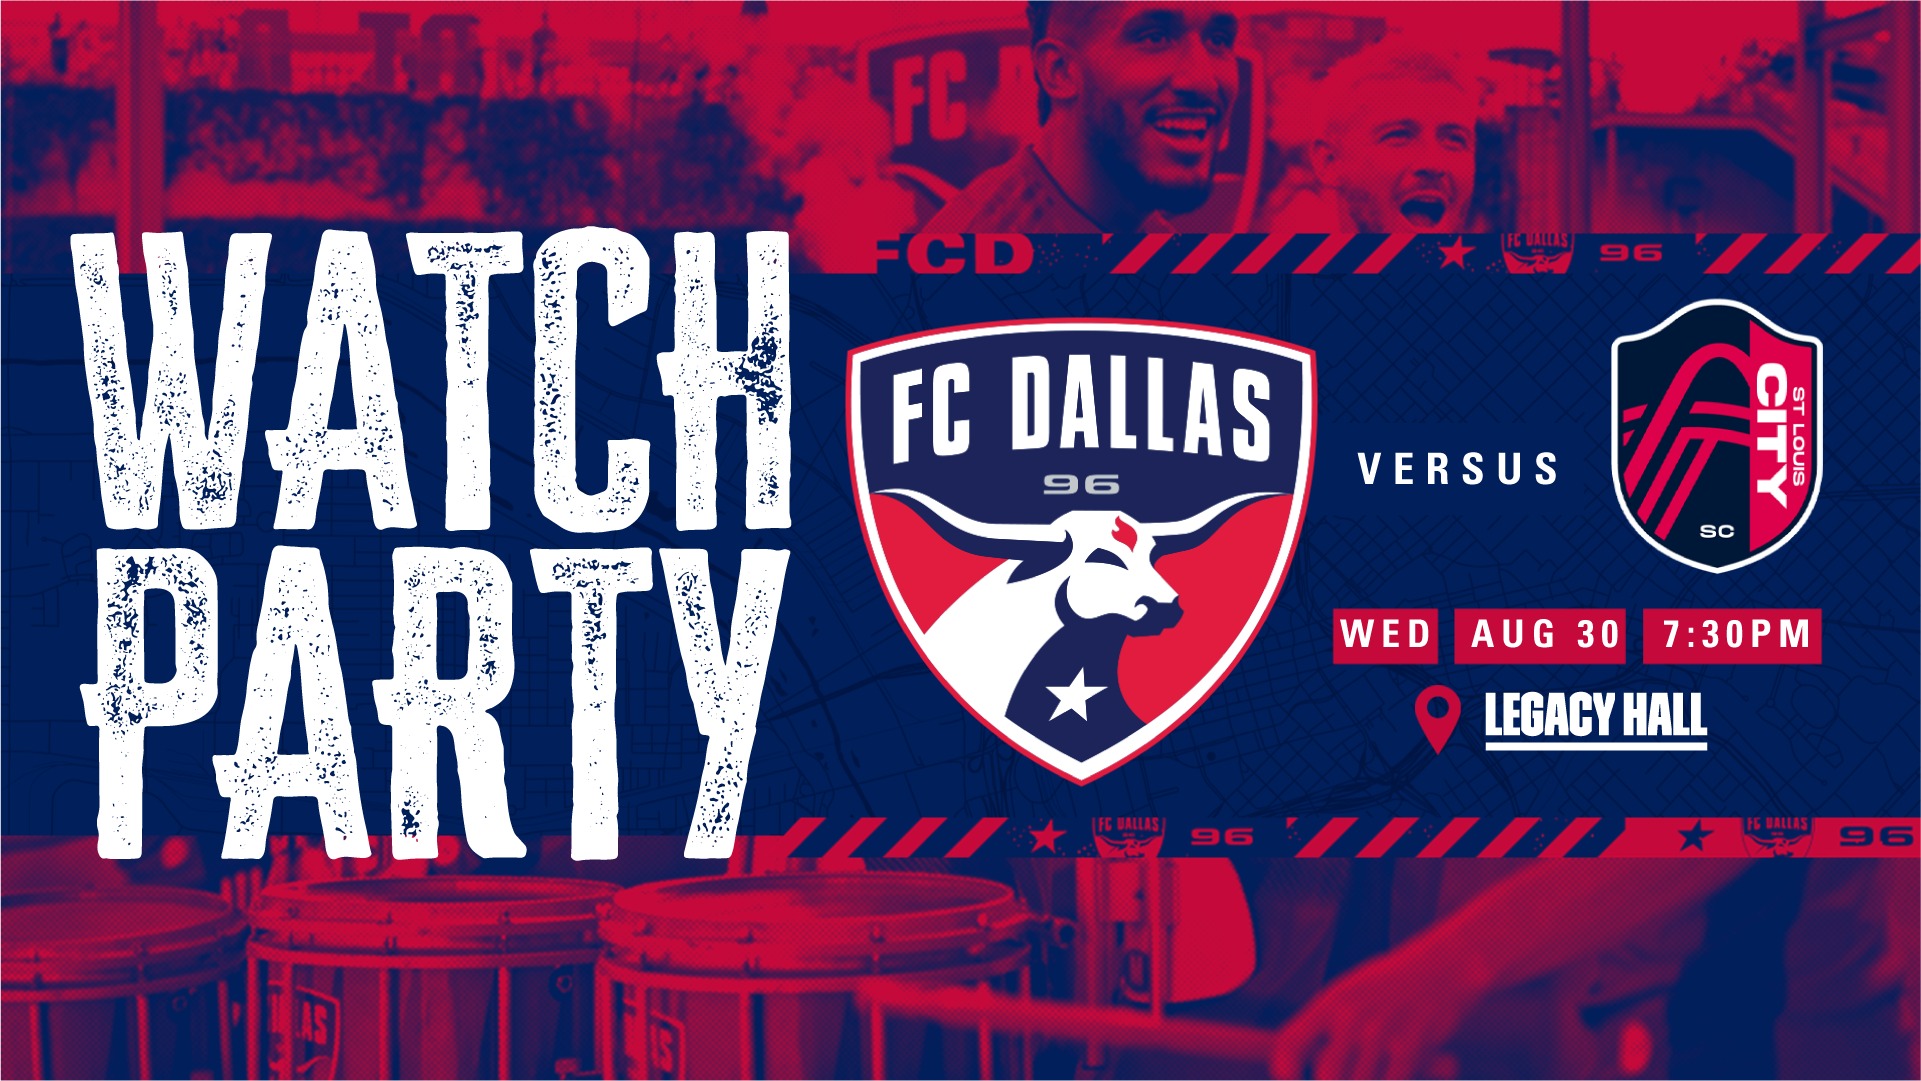 FC Dallas VS St. Louis Watch Party